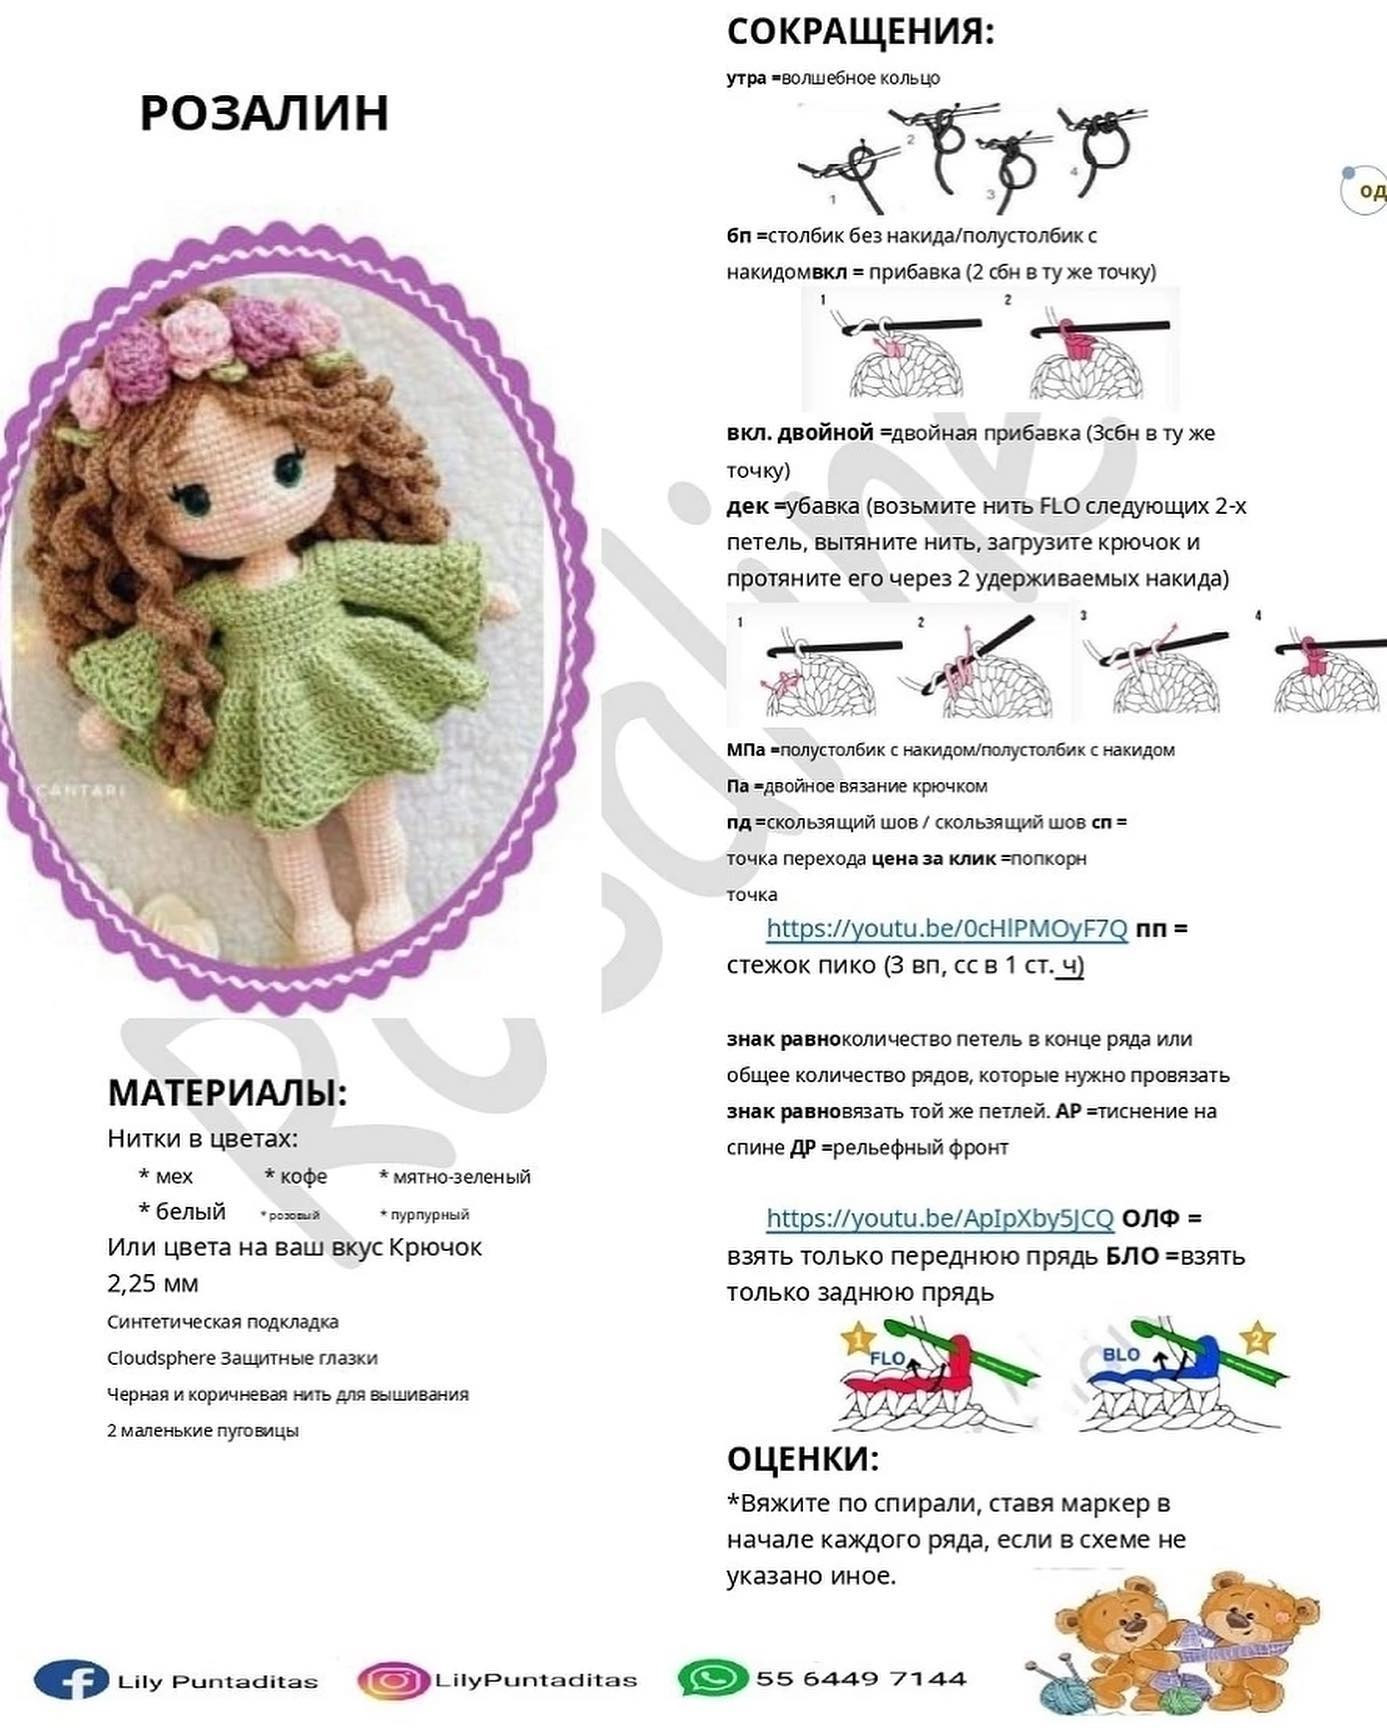 brown hair doll green dress, purple flowers, pink flowers, crochet pattern